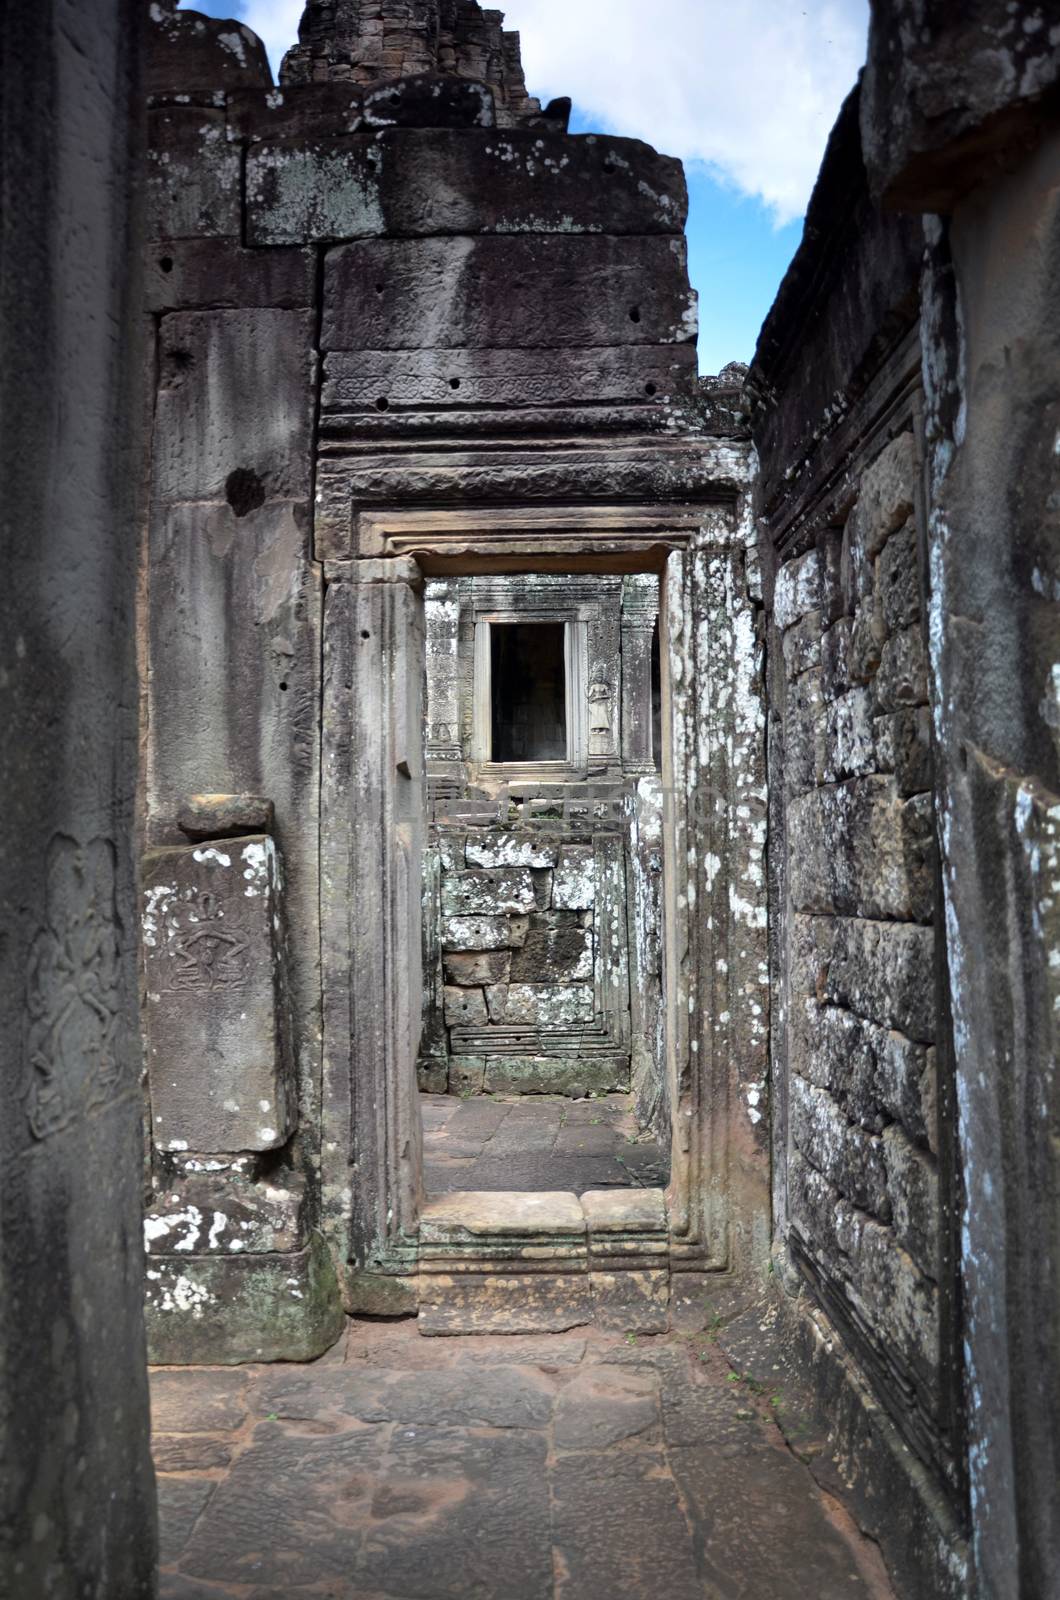 Bayon Temple At Angkor Wat, Cambodia by tang90246